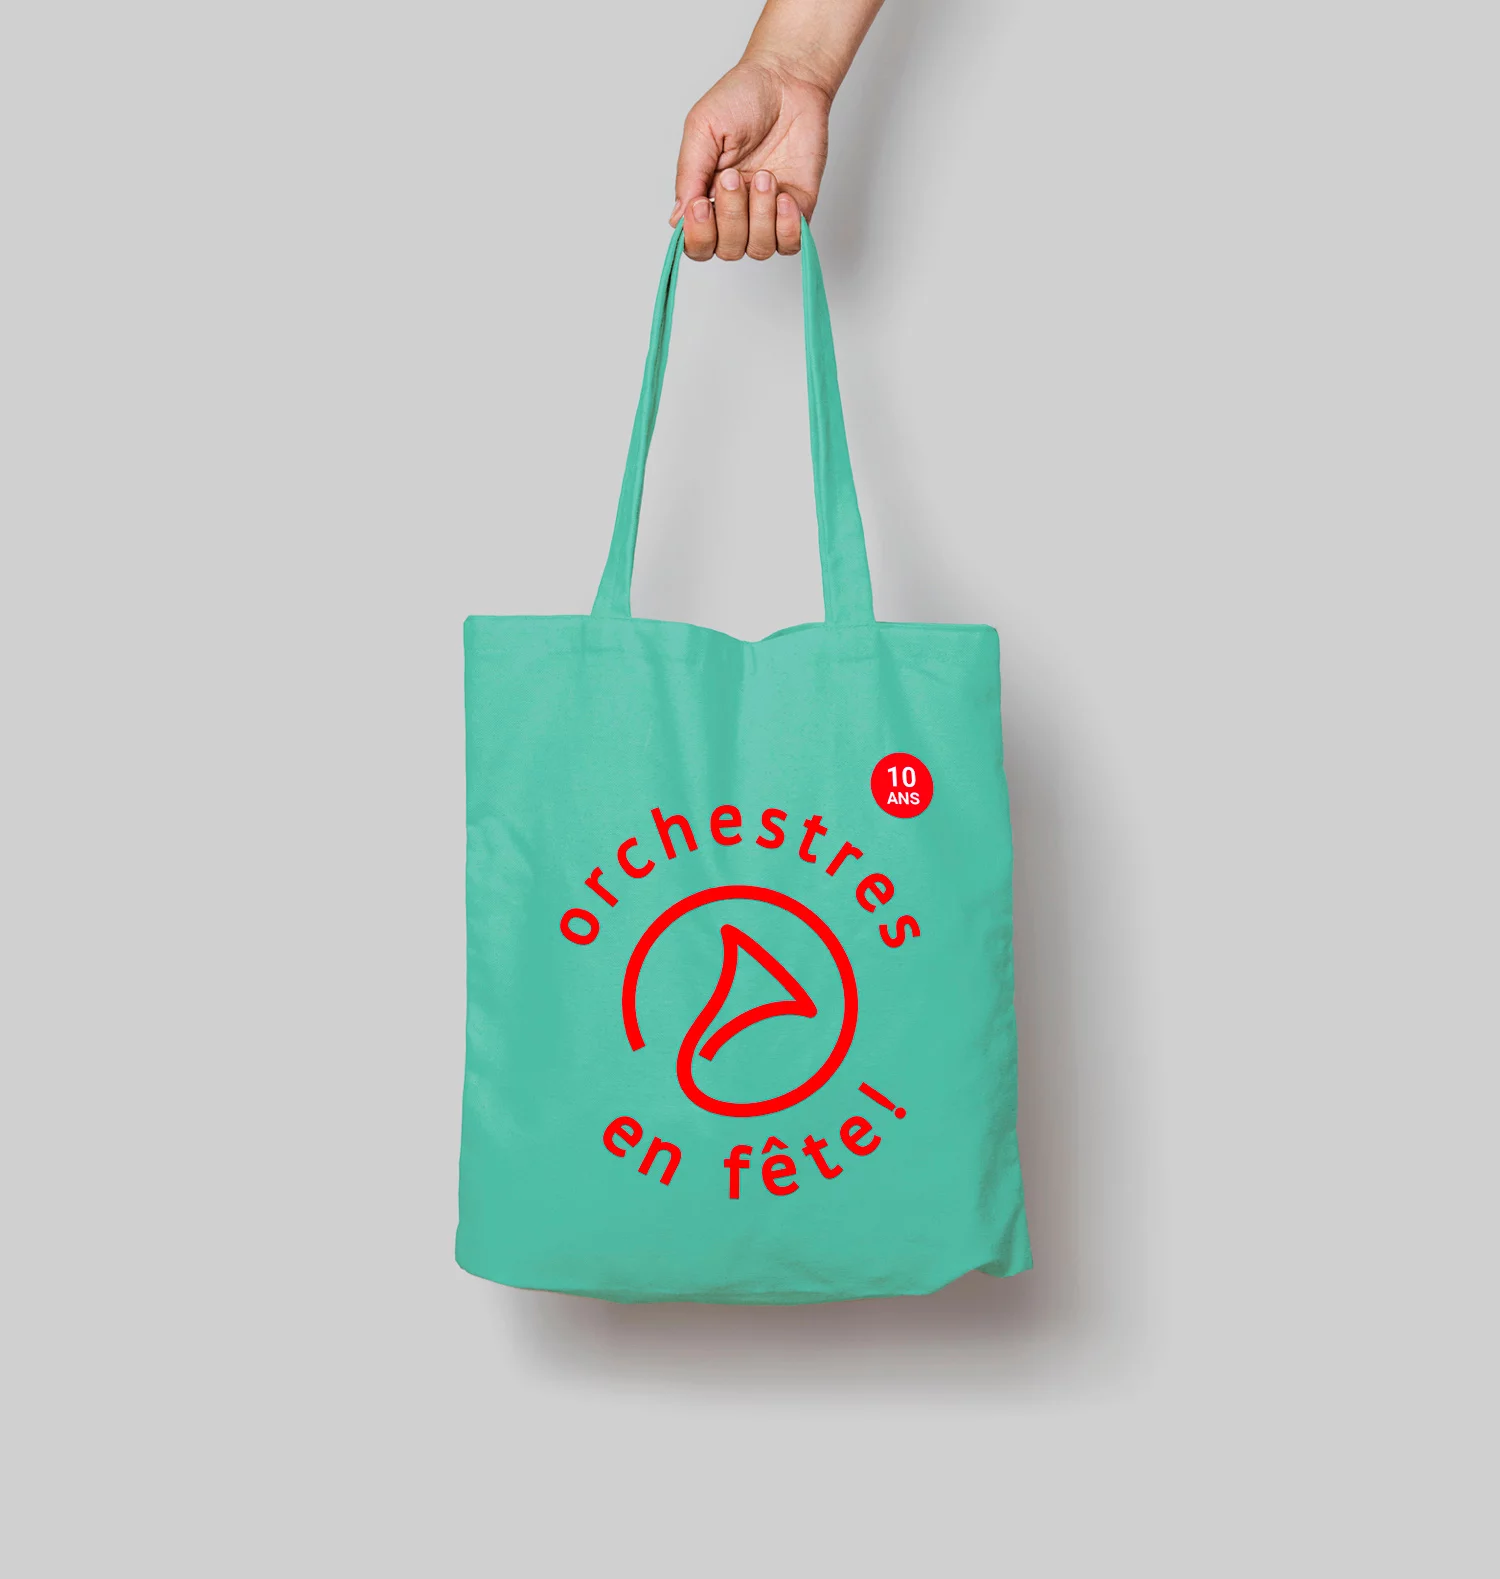 Tote bag vert avec le logo "Orchestres en fête" rouge imprimé dessus